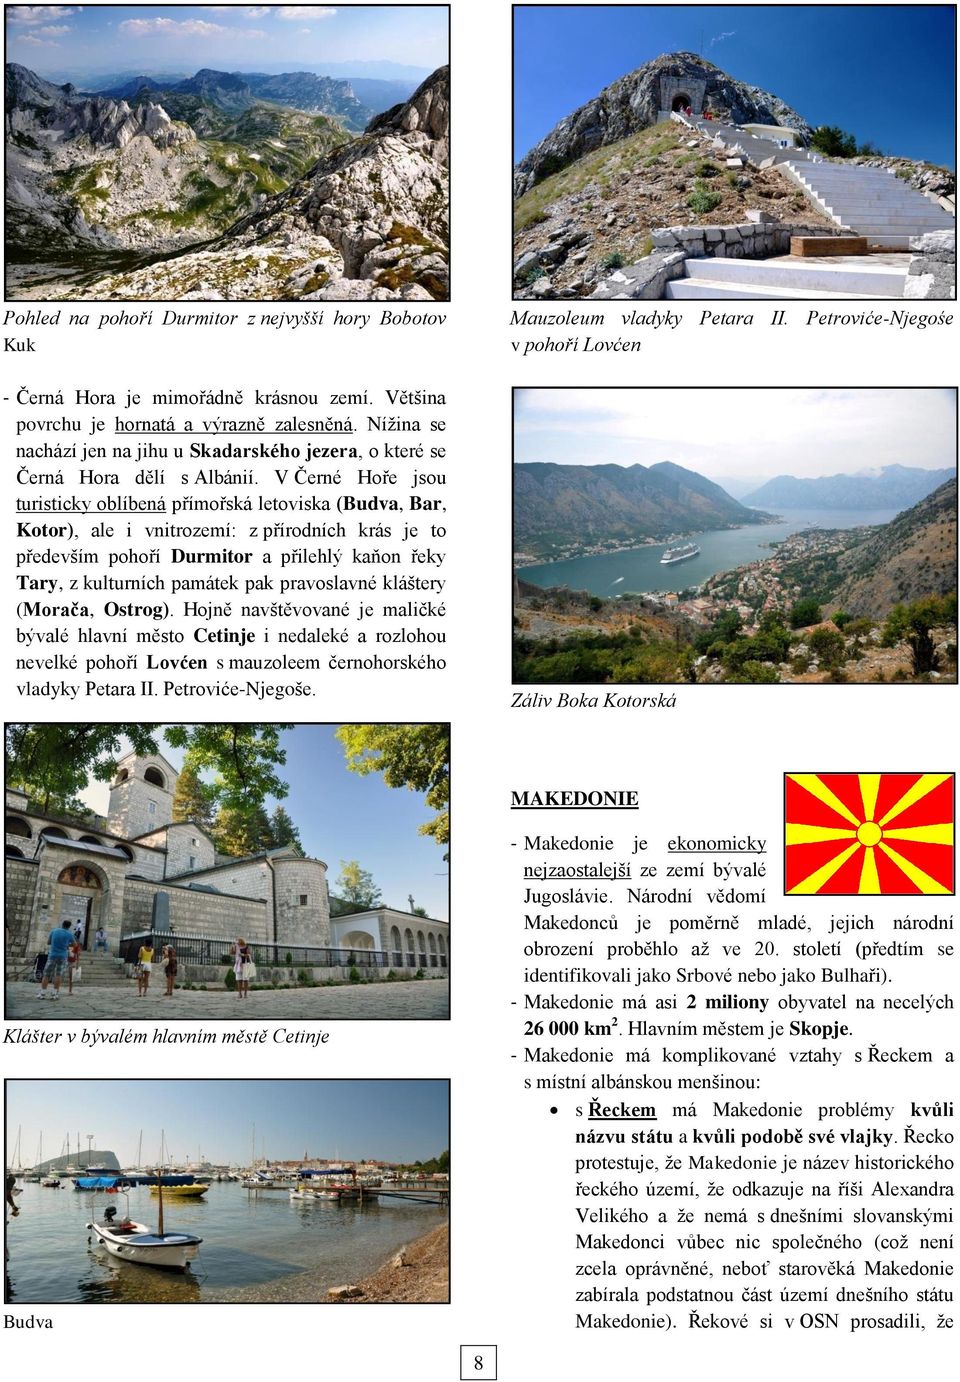 V Černé Hoře jsou turisticky oblíbená přímořská letoviska (Budva, Bar, Kotor), ale i vnitrozemí: z přírodních krás je to především pohoří Durmitor a přilehlý kaňon řeky Tary, z kulturních památek pak